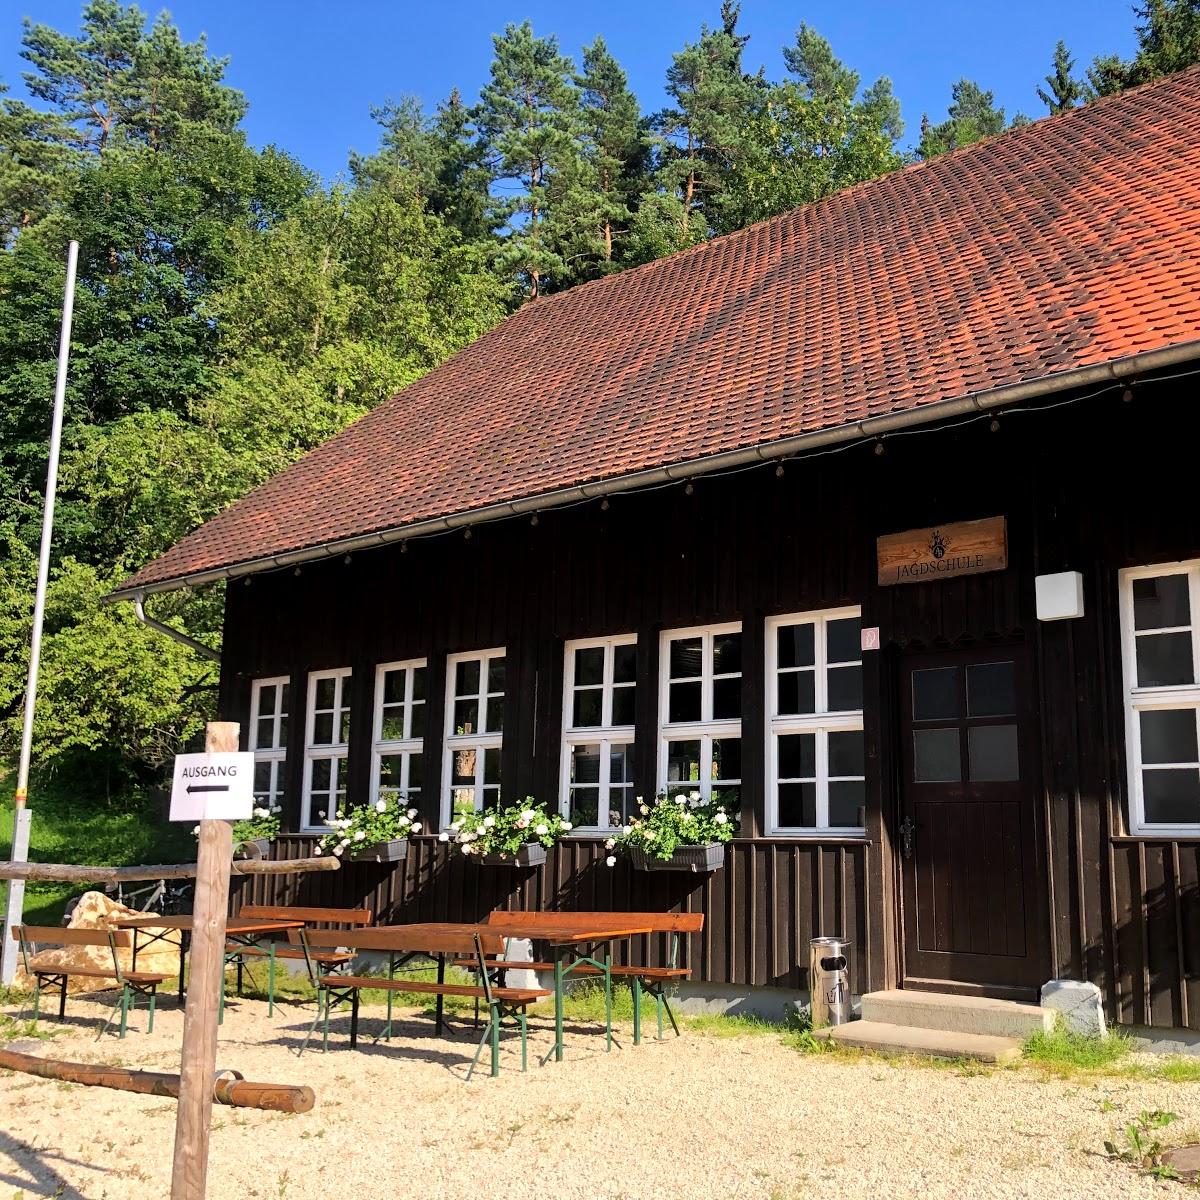 Restaurant "Gasthaus Hirsch" in  Neresheim